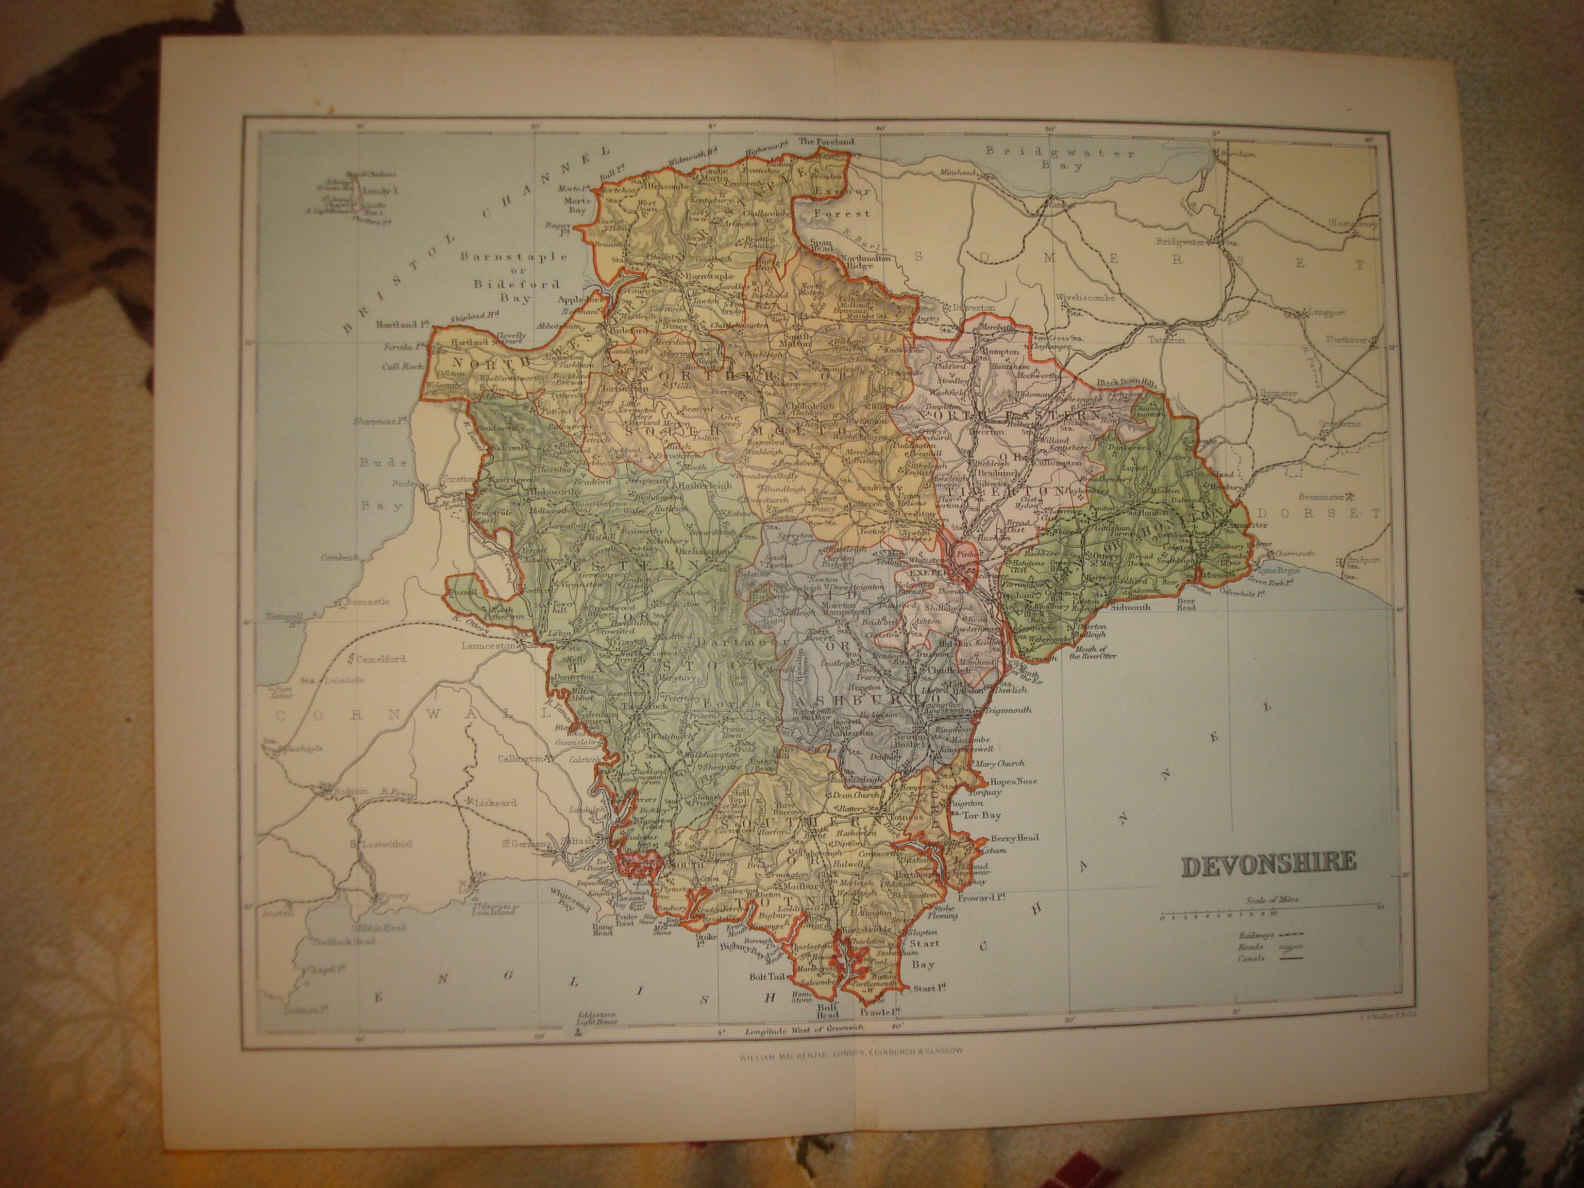 Devon+england+map